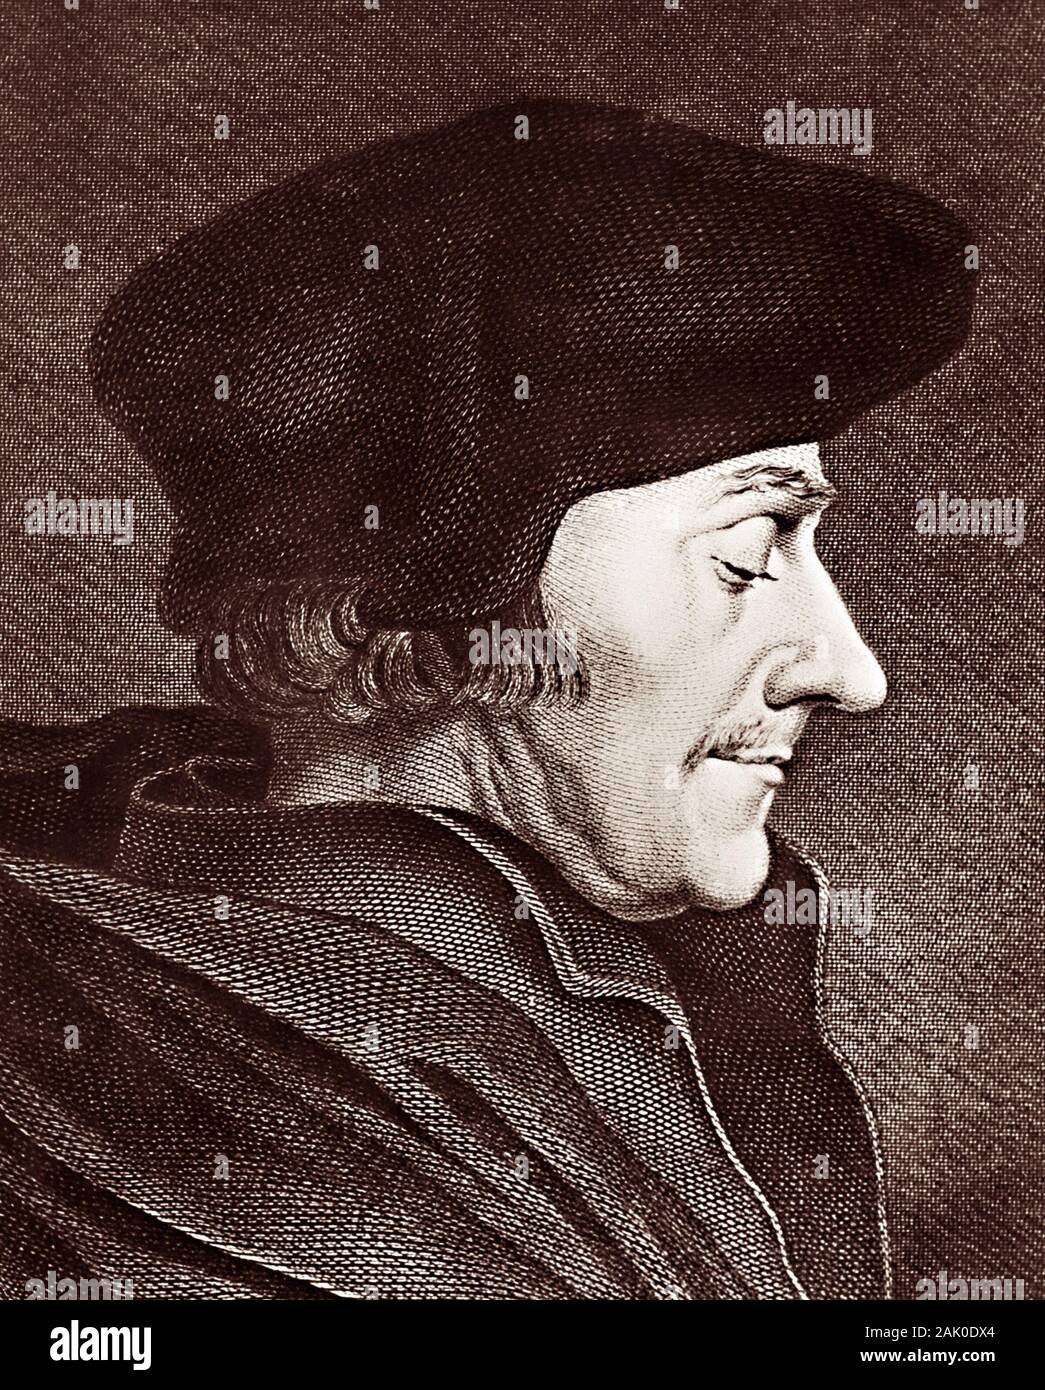 Gravieren von Desiderius Erasmus Roterodamus (1466-1536), in der Regel bezeichnet als Erasmus von Rotterdam oder einfach Erasmus. Erasmus war ein niederländischer Philosoph, Bibelübersetzer und christlich-humanistische weithin als einer der größten Gelehrten der nördlichen Renaissance. Stockfoto